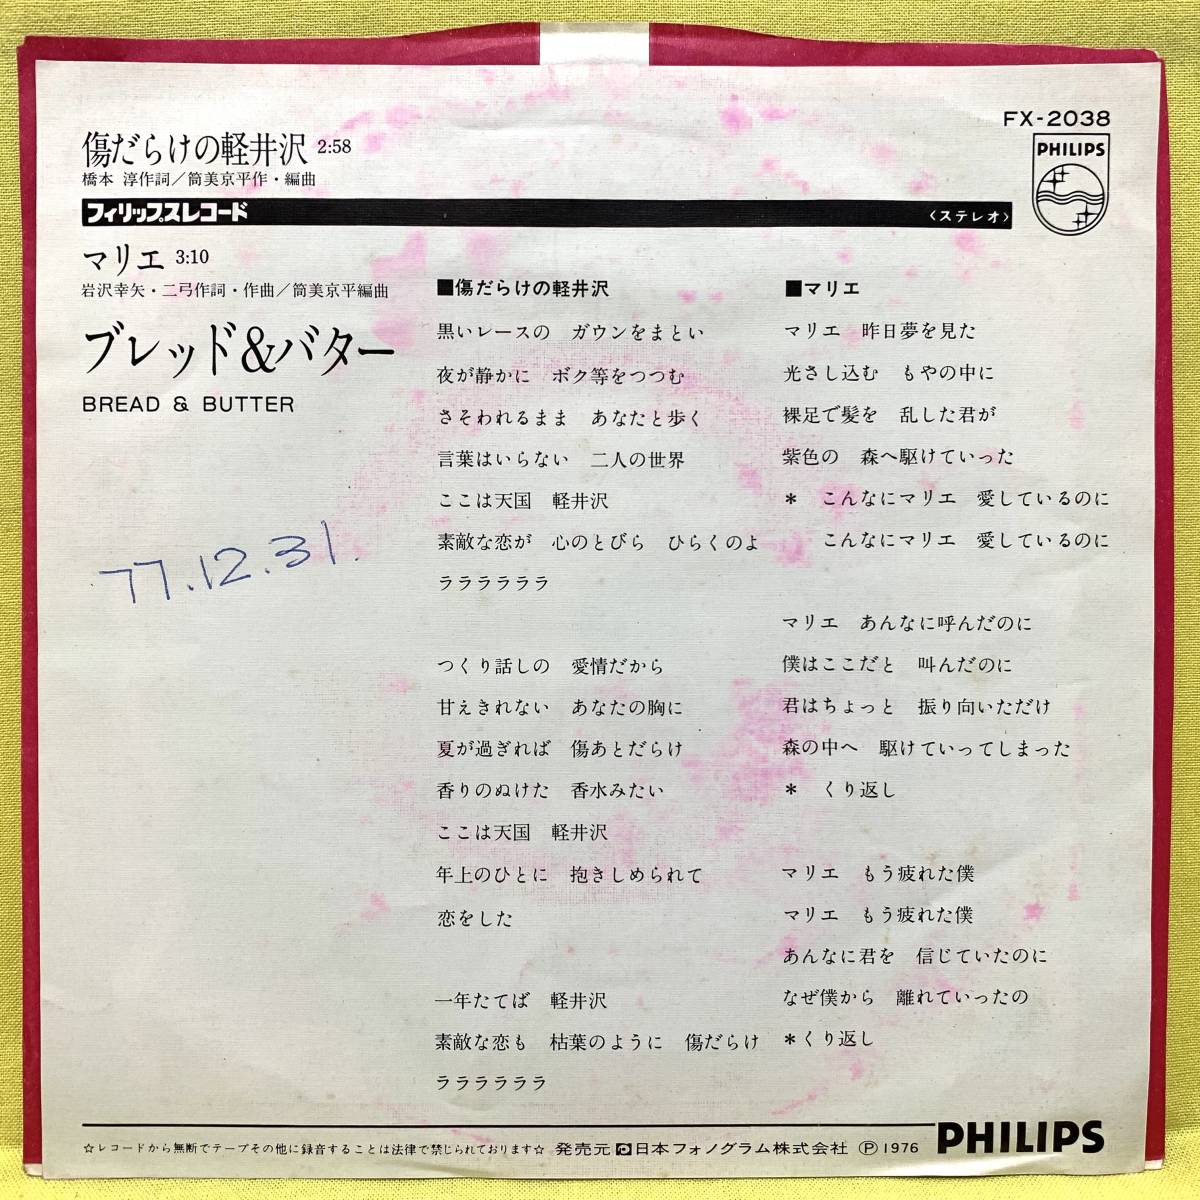 EP ブレッド&バター 傷だらけの軽井沢/マリエ '73 即決 レコード(中古